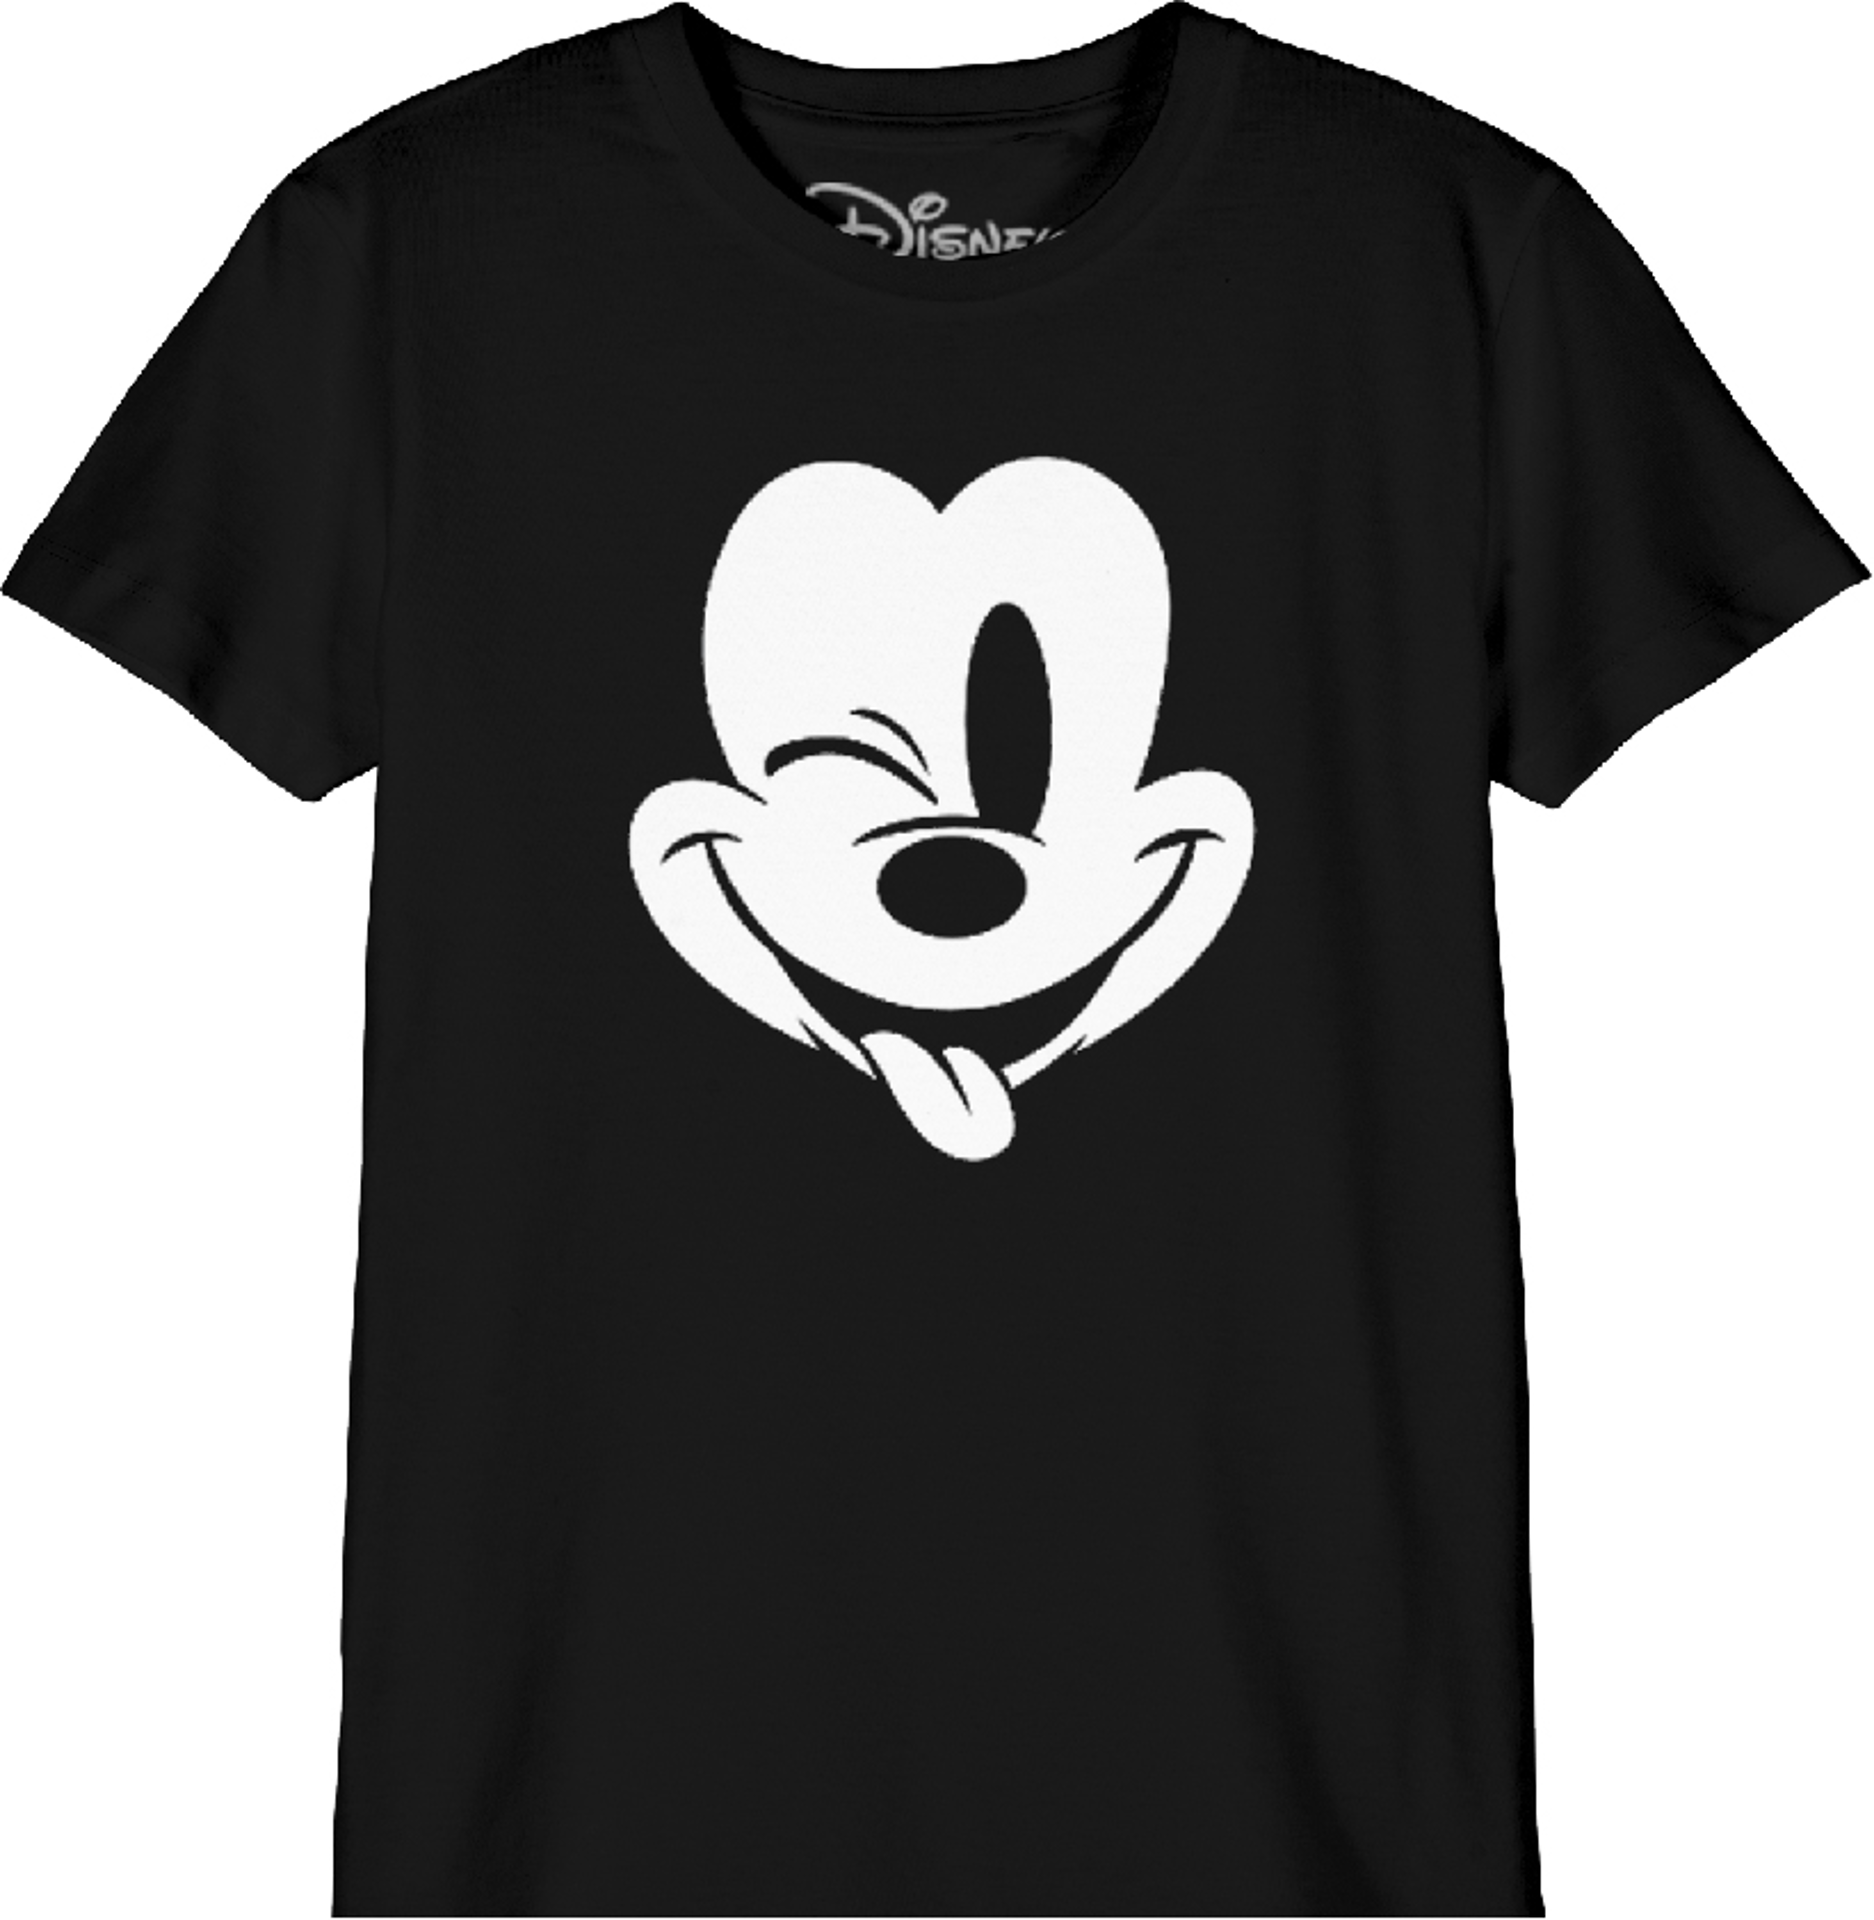 Disney - T-Shirt Noir Enfant Mickey Mouse faisant un clin d'oeil - 8 ans